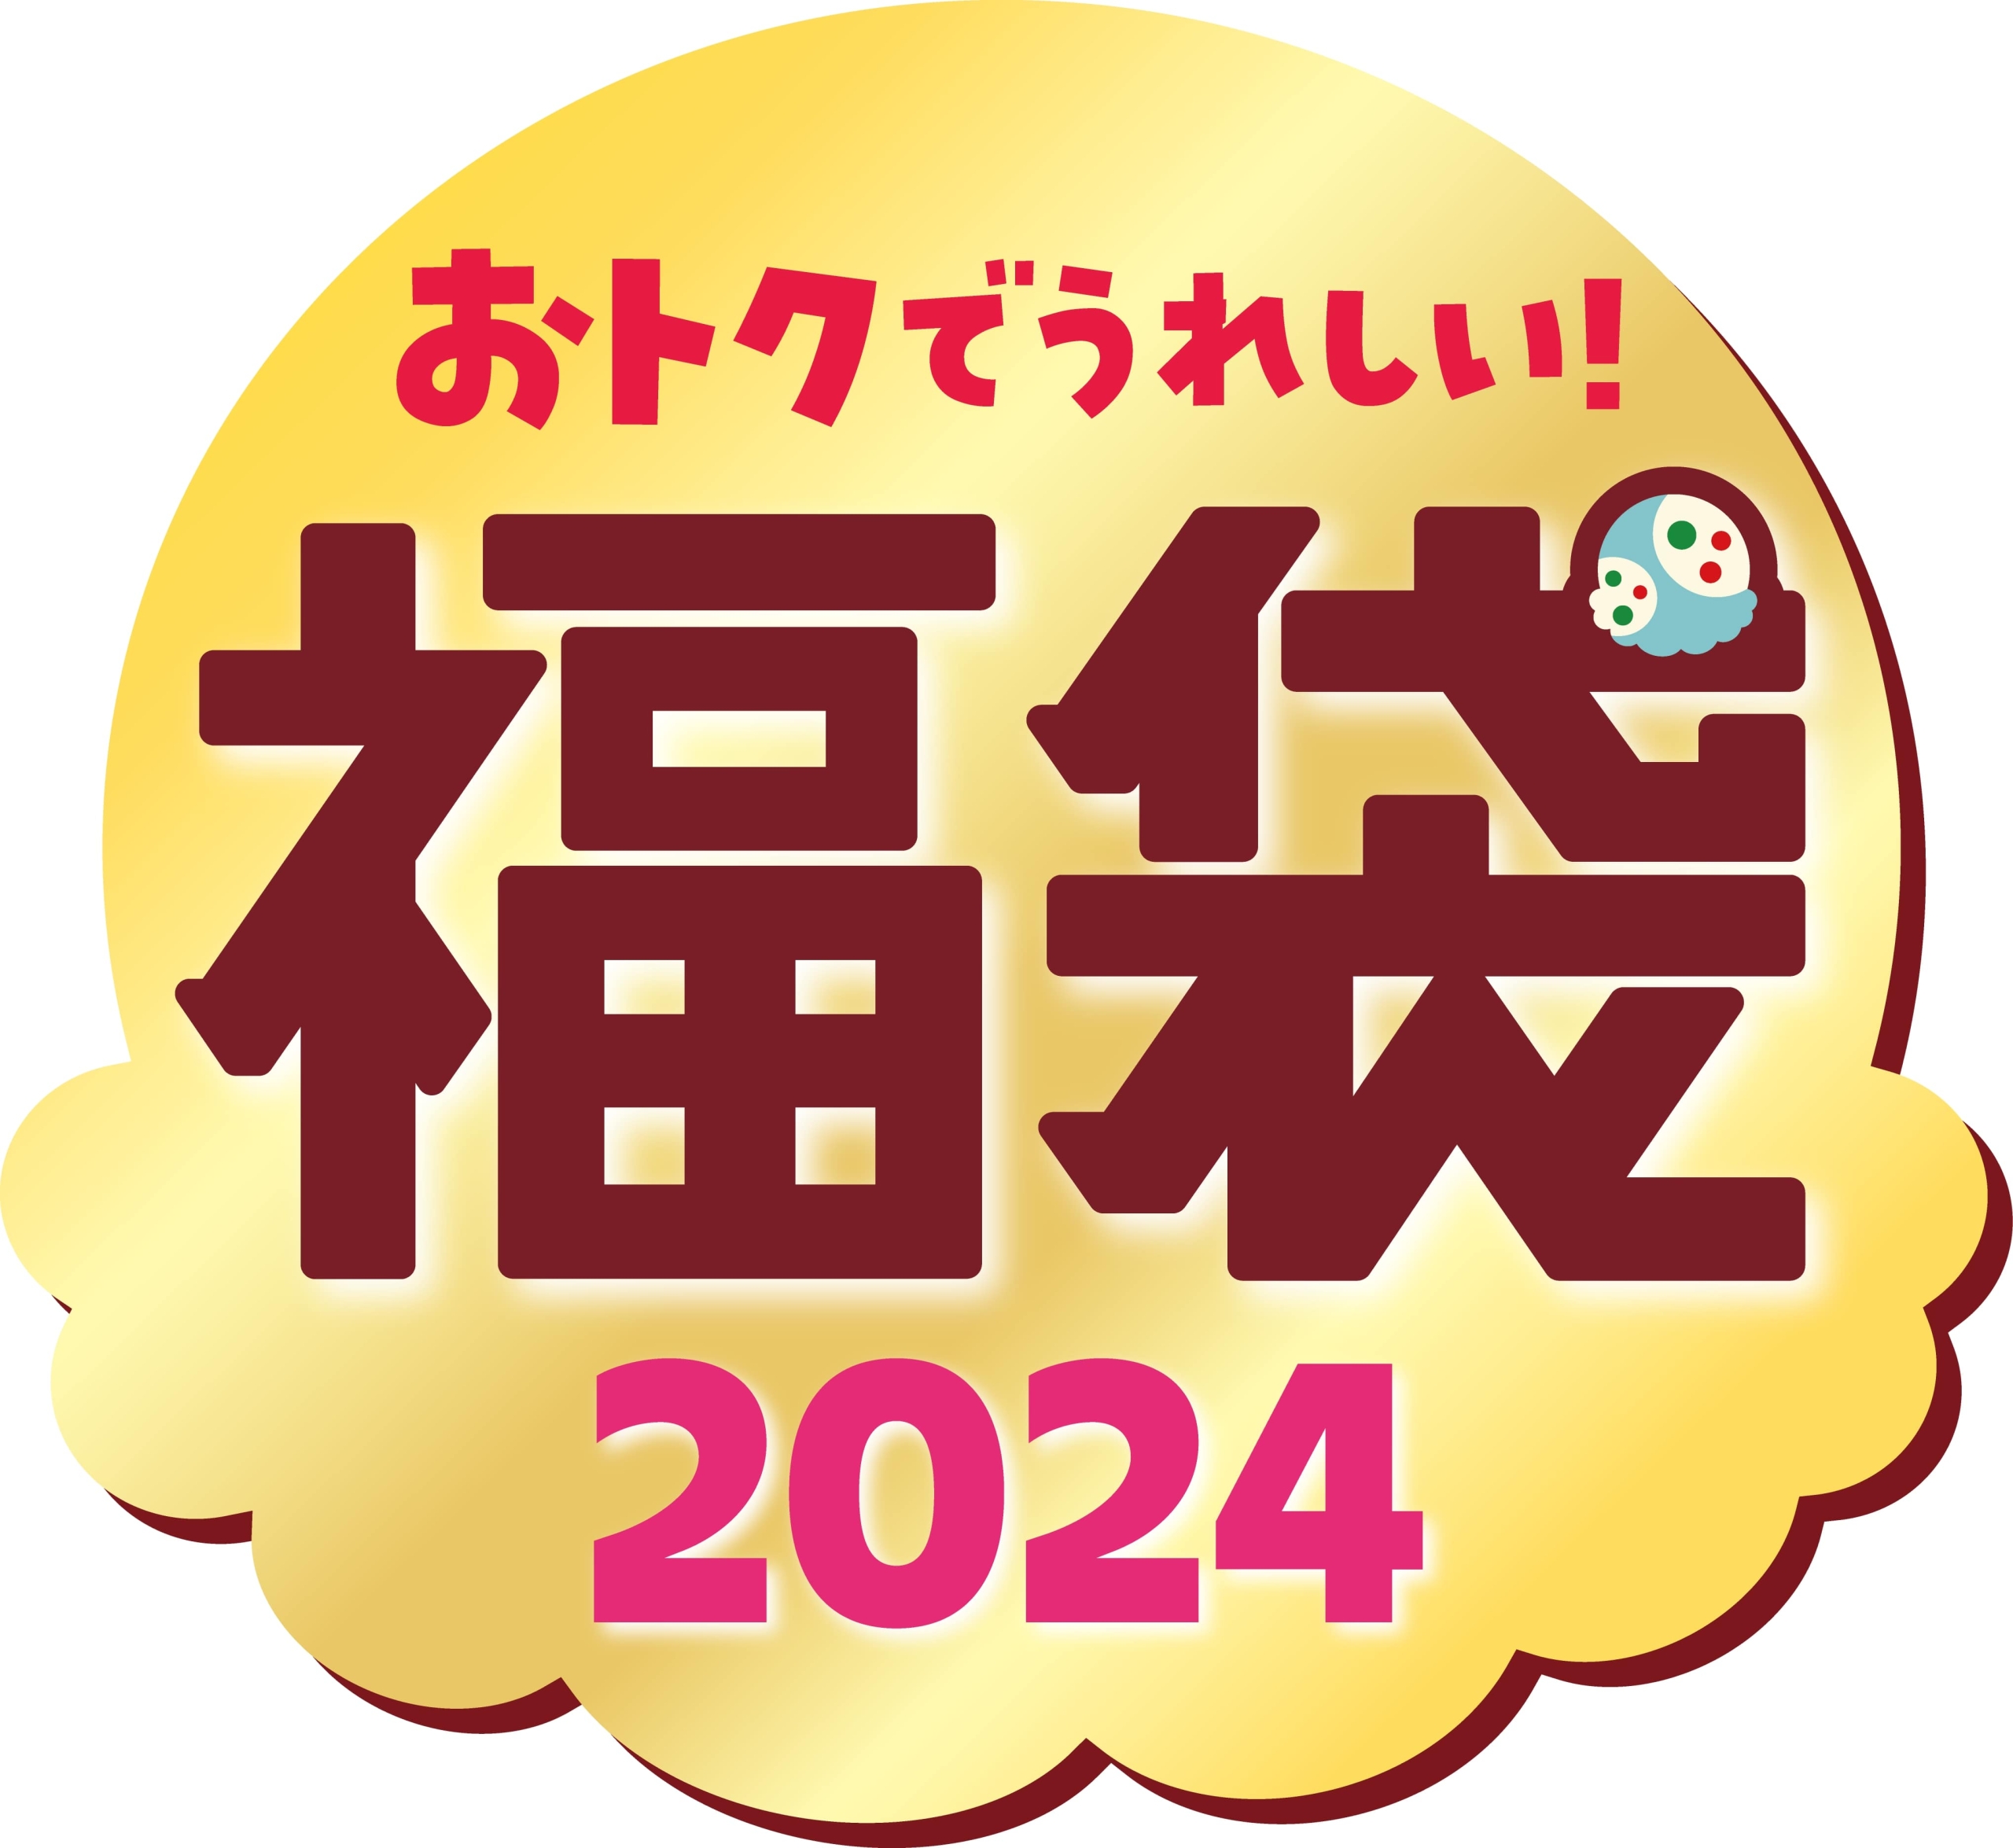 「サーティワン福袋2024」ロゴ/B-Rサーティワンアイスクリーム